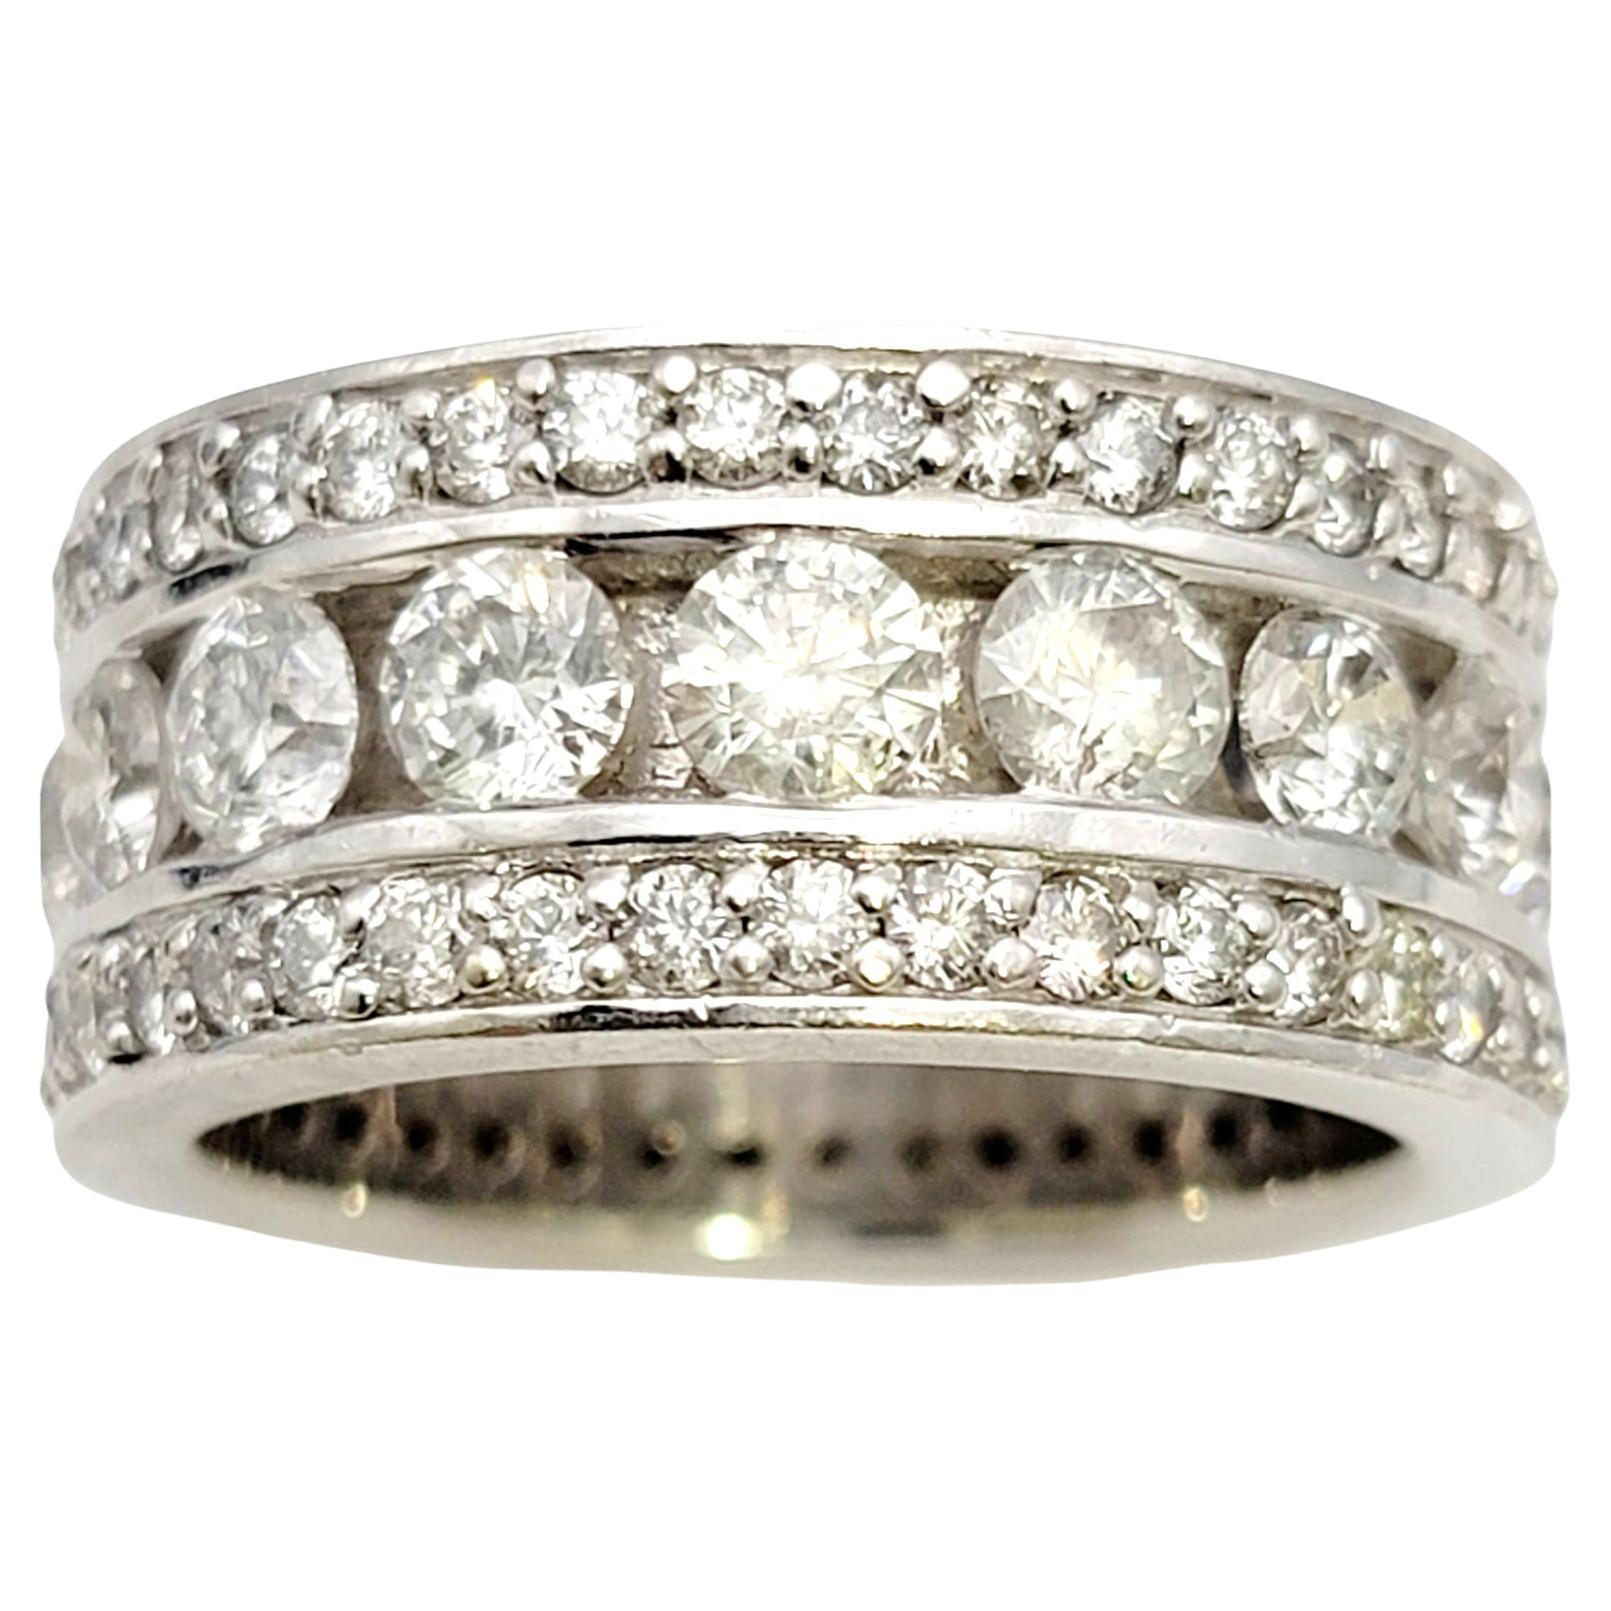 Bague en or blanc à trois rangs de diamants ronds et brillants d'un poids total de 5,85 carats.